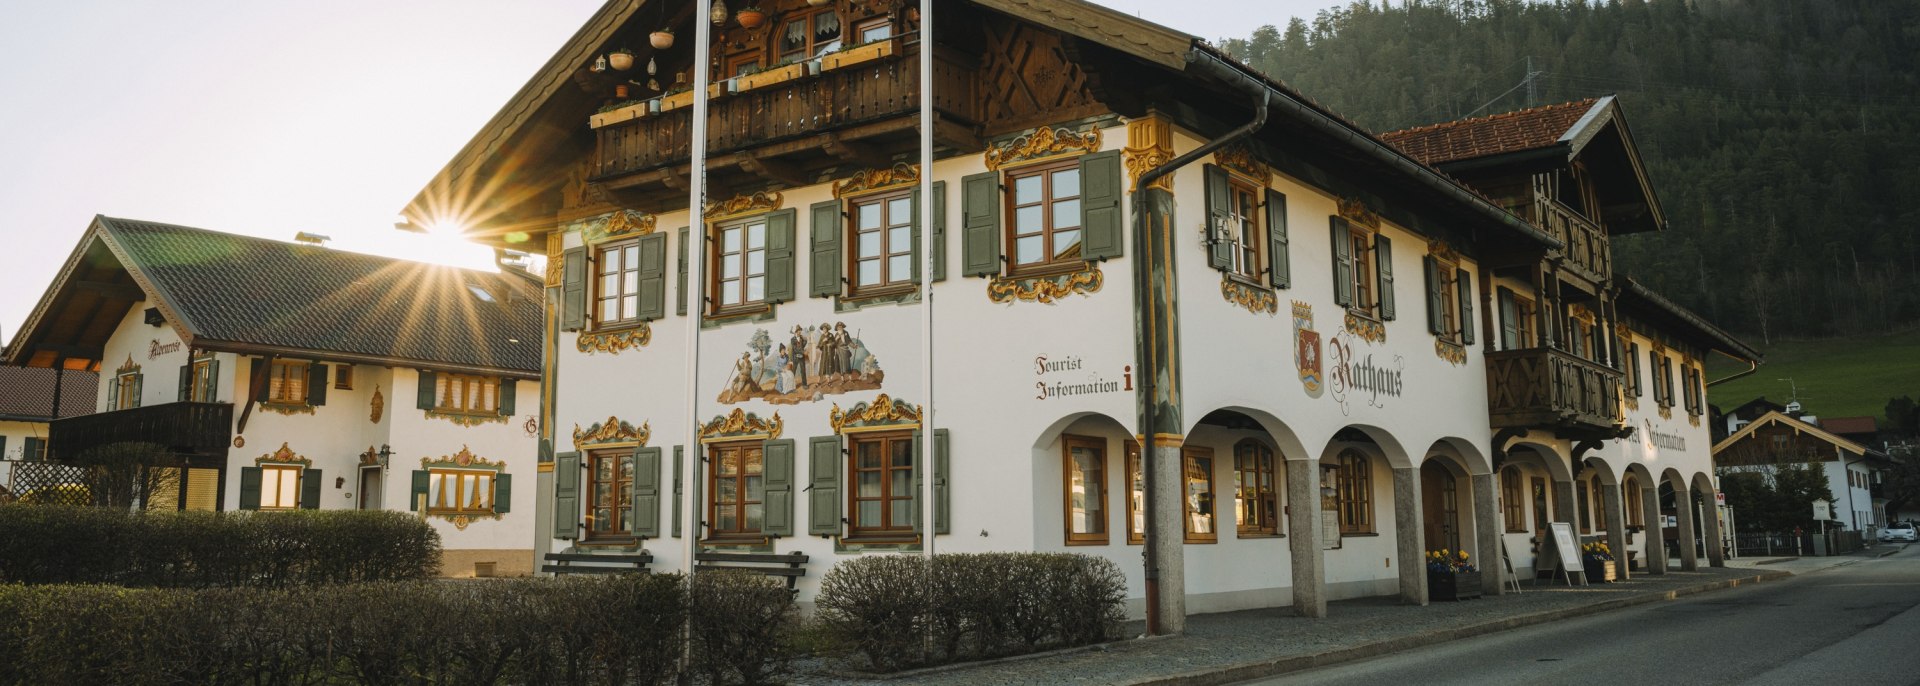 Bunte Fassade mit Lüftlmalereien an dem Wallgauer Rathaus , © Alpenwelt Karwendel | Kristof Göttling